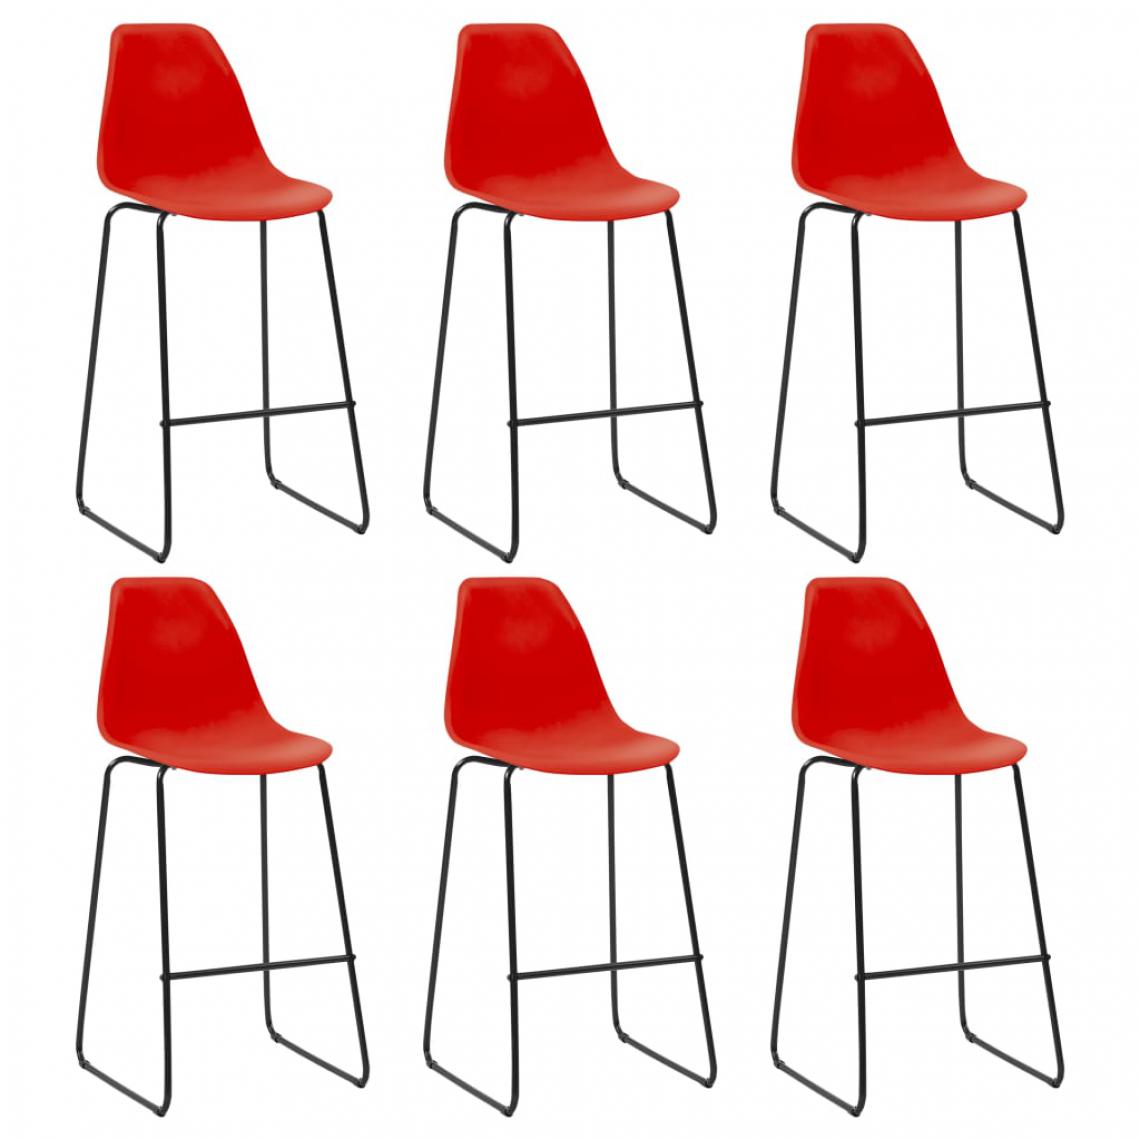 Chunhelife - Chaises de bar 6 pcs Rouge Plastique - Tabourets